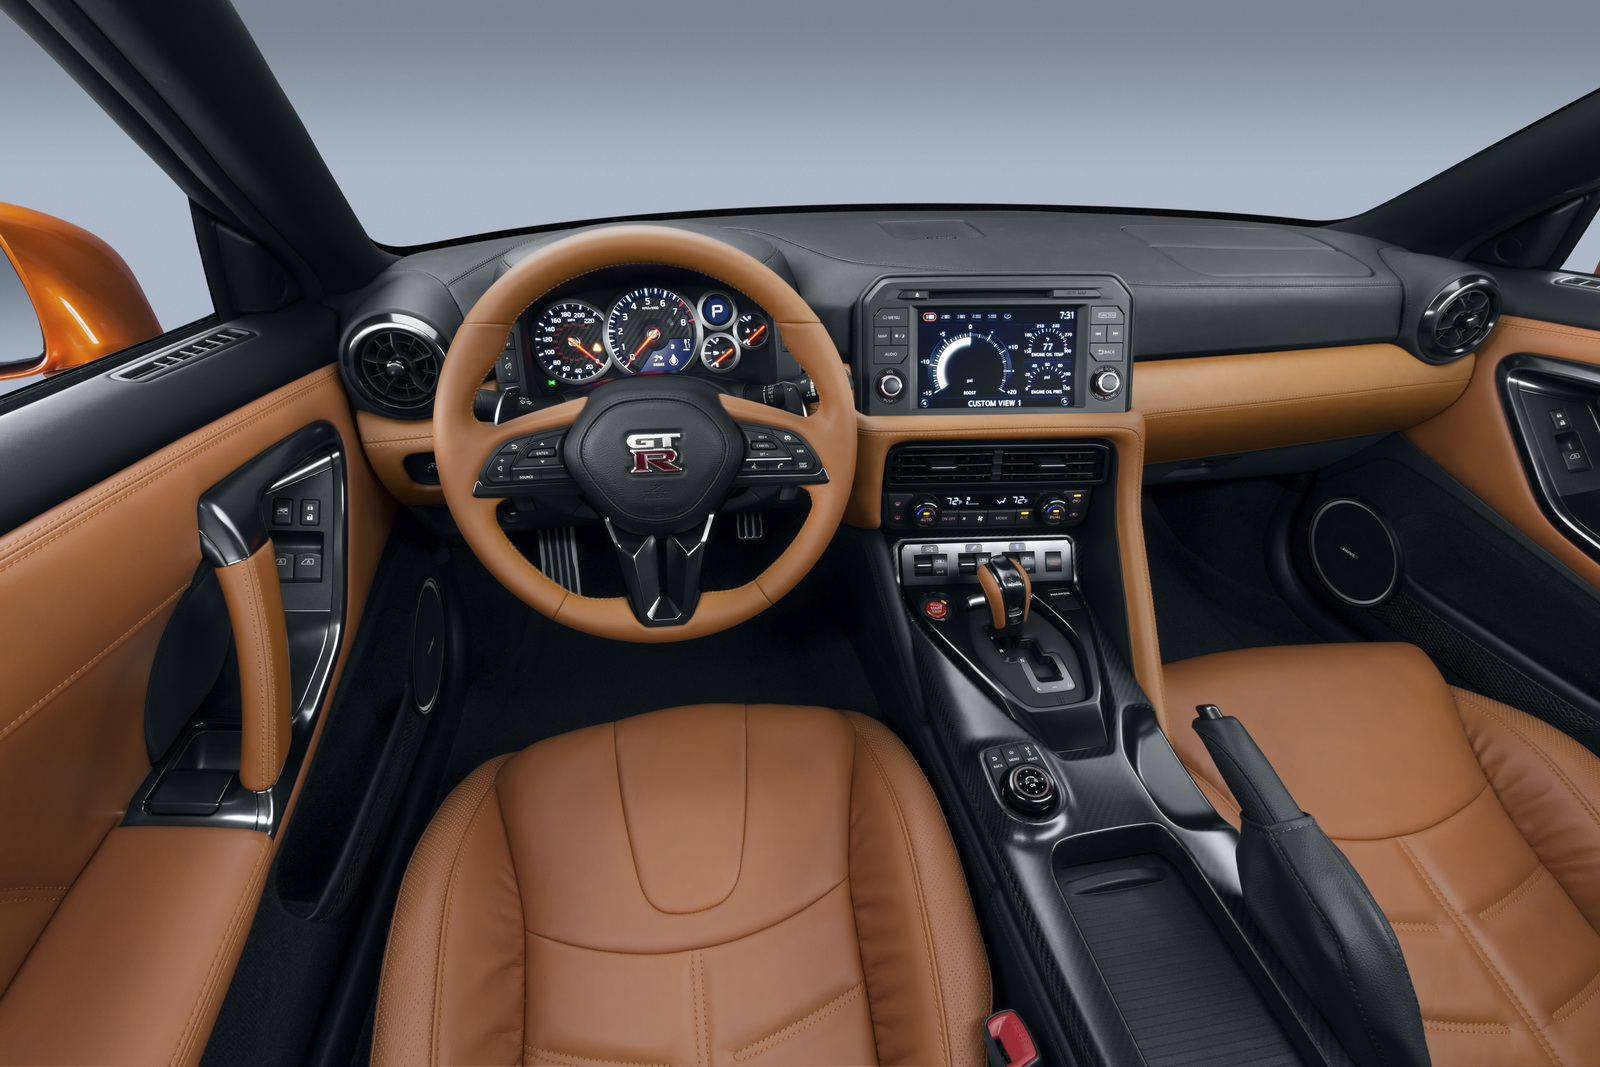 
Bên trong Nissan GT-R 2017 cũng có không gian nội thất được thiết kế hoàn toàn mới. Bảng táp-lô được làm bằng vật liệu mỏng hơn để giảm trọng lượng. 
